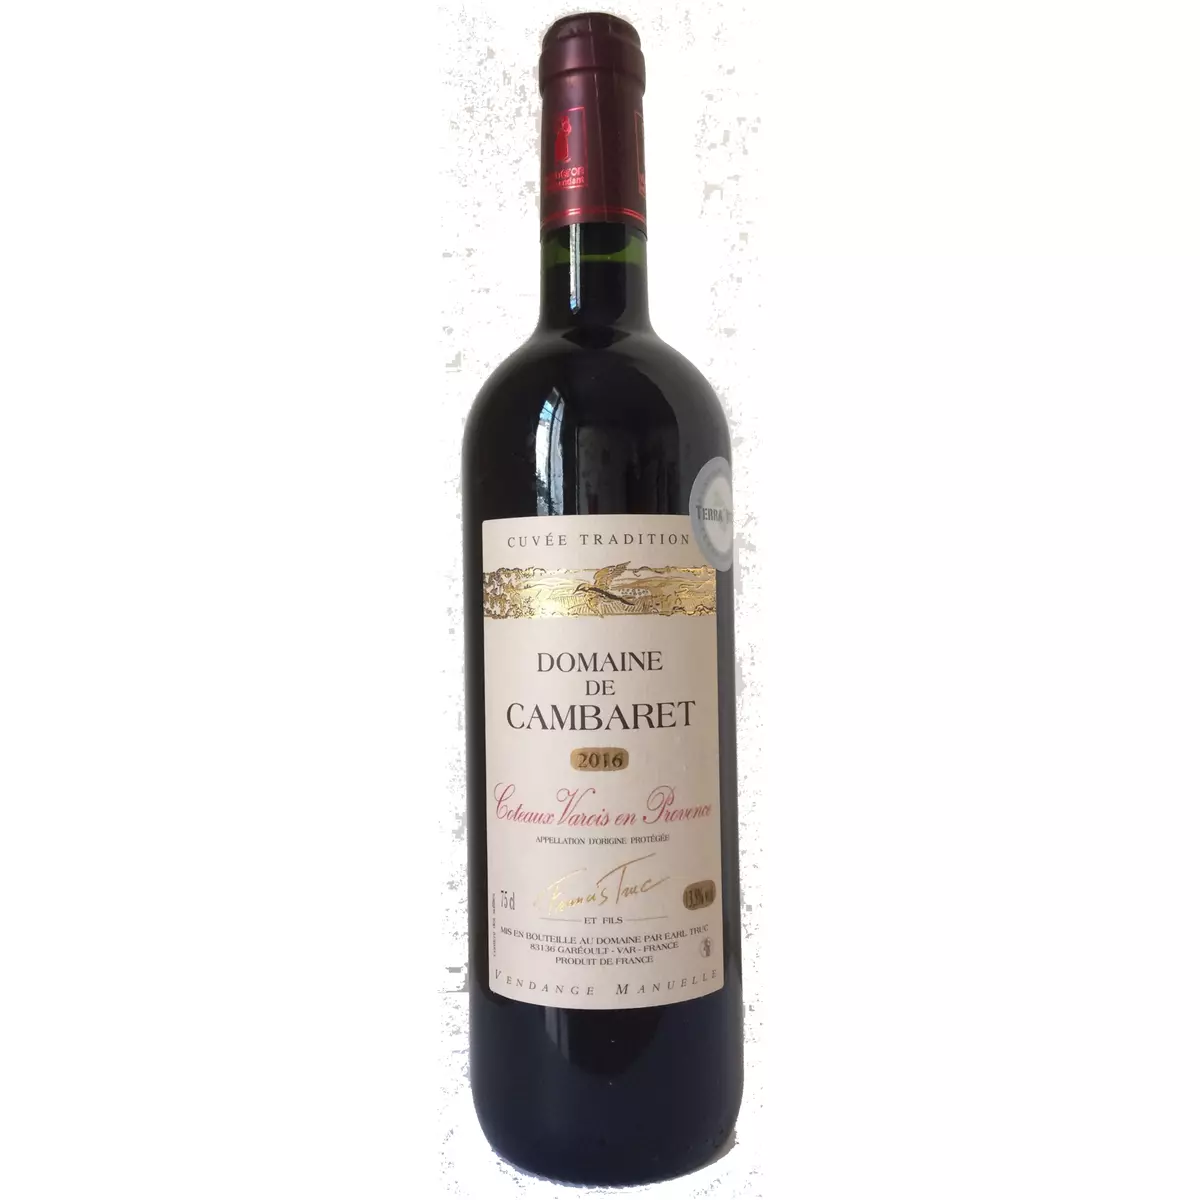 Vin rouge AOP Coteaux Varois-en-Provence Domaine de Cambaret 2019 75cl